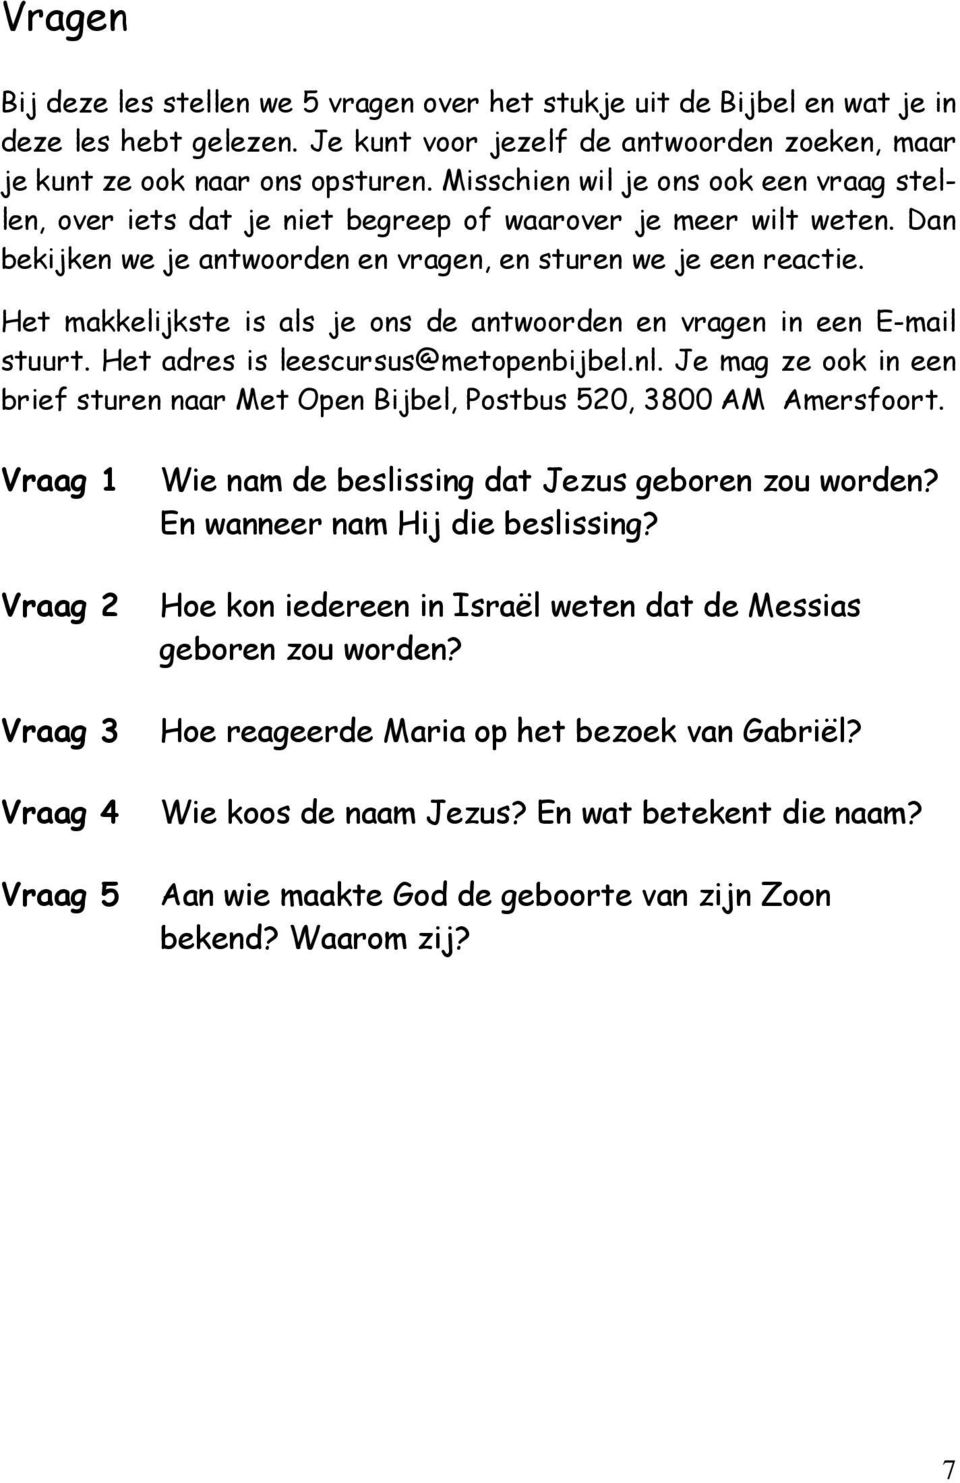 Het makkelijkste is als je ons de antwoorden en vragen in een E-mail stuurt. Het adres is leescursus@metopenbijbel.nl.